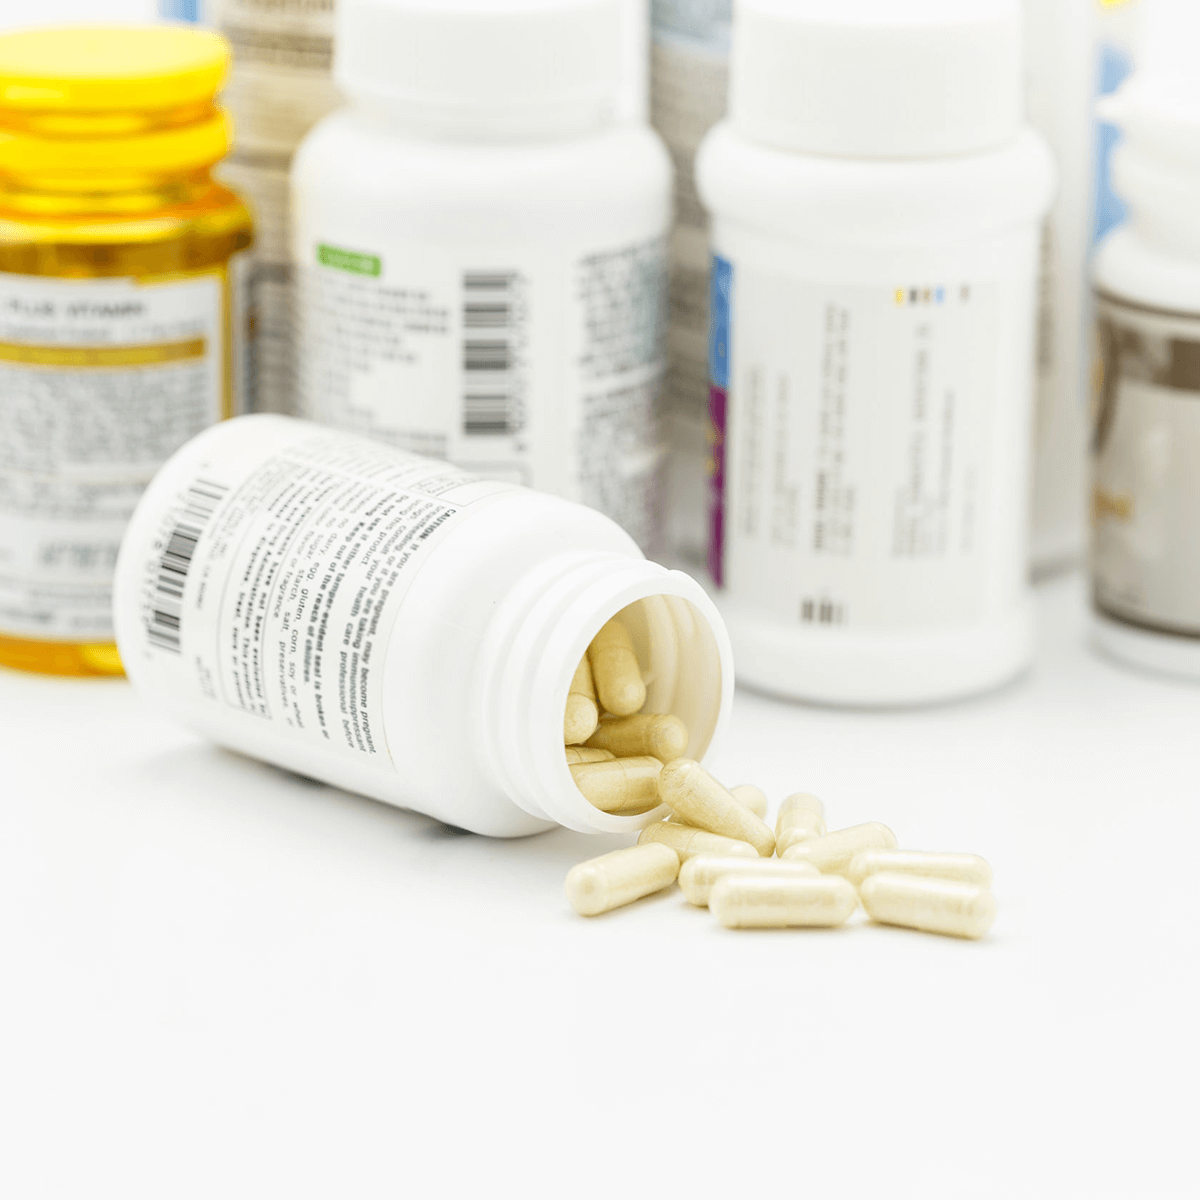 Over The Counter vs Bariatric Specific Vitamins